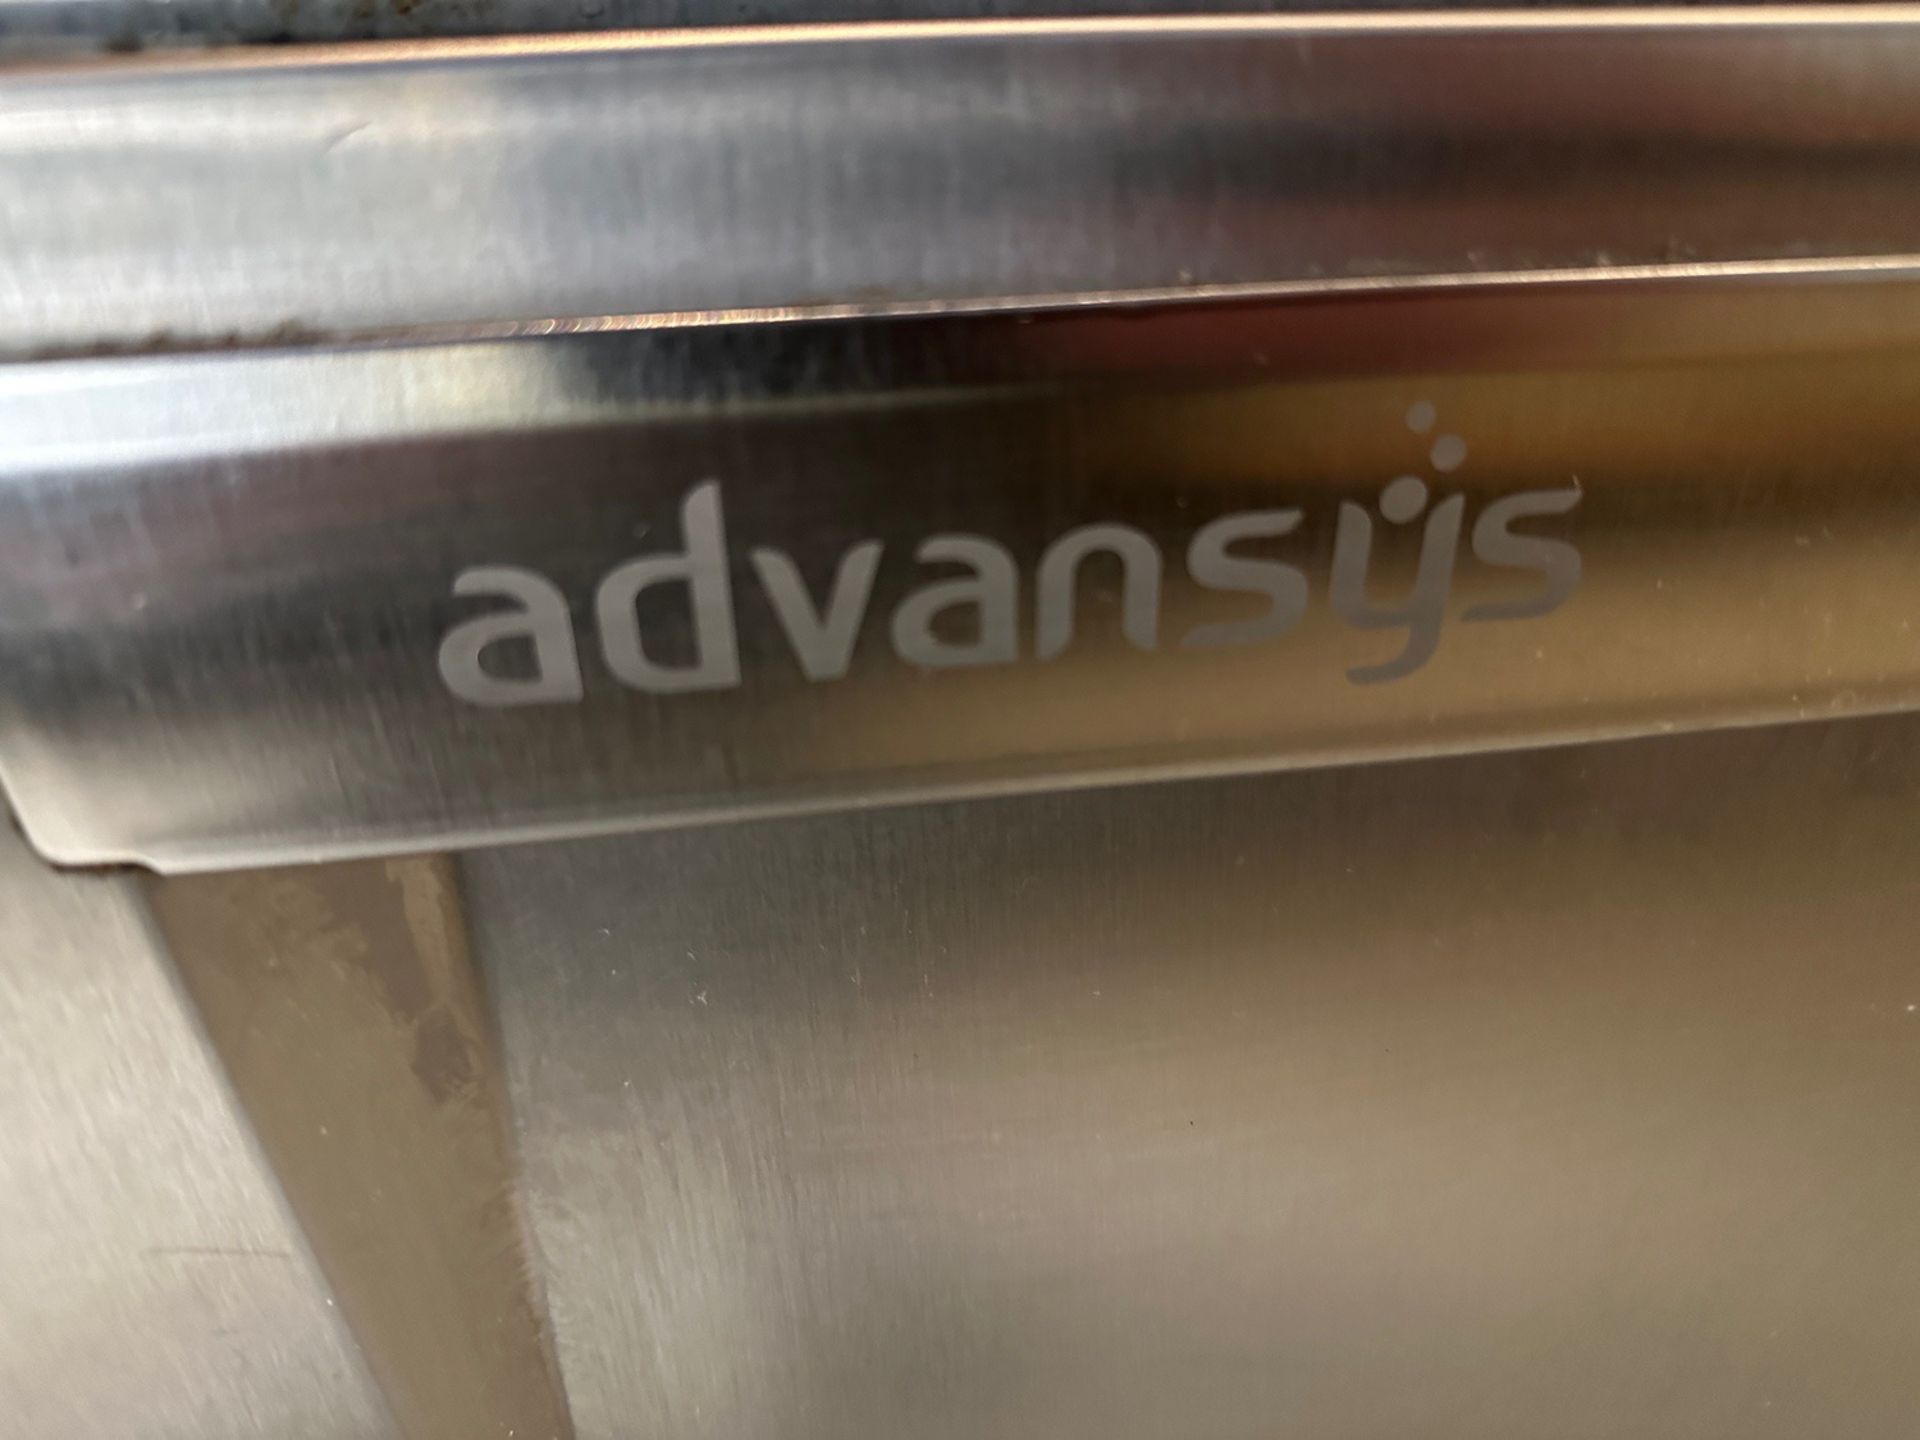 Hobart Advansys Dishwasher - Image 3 of 3